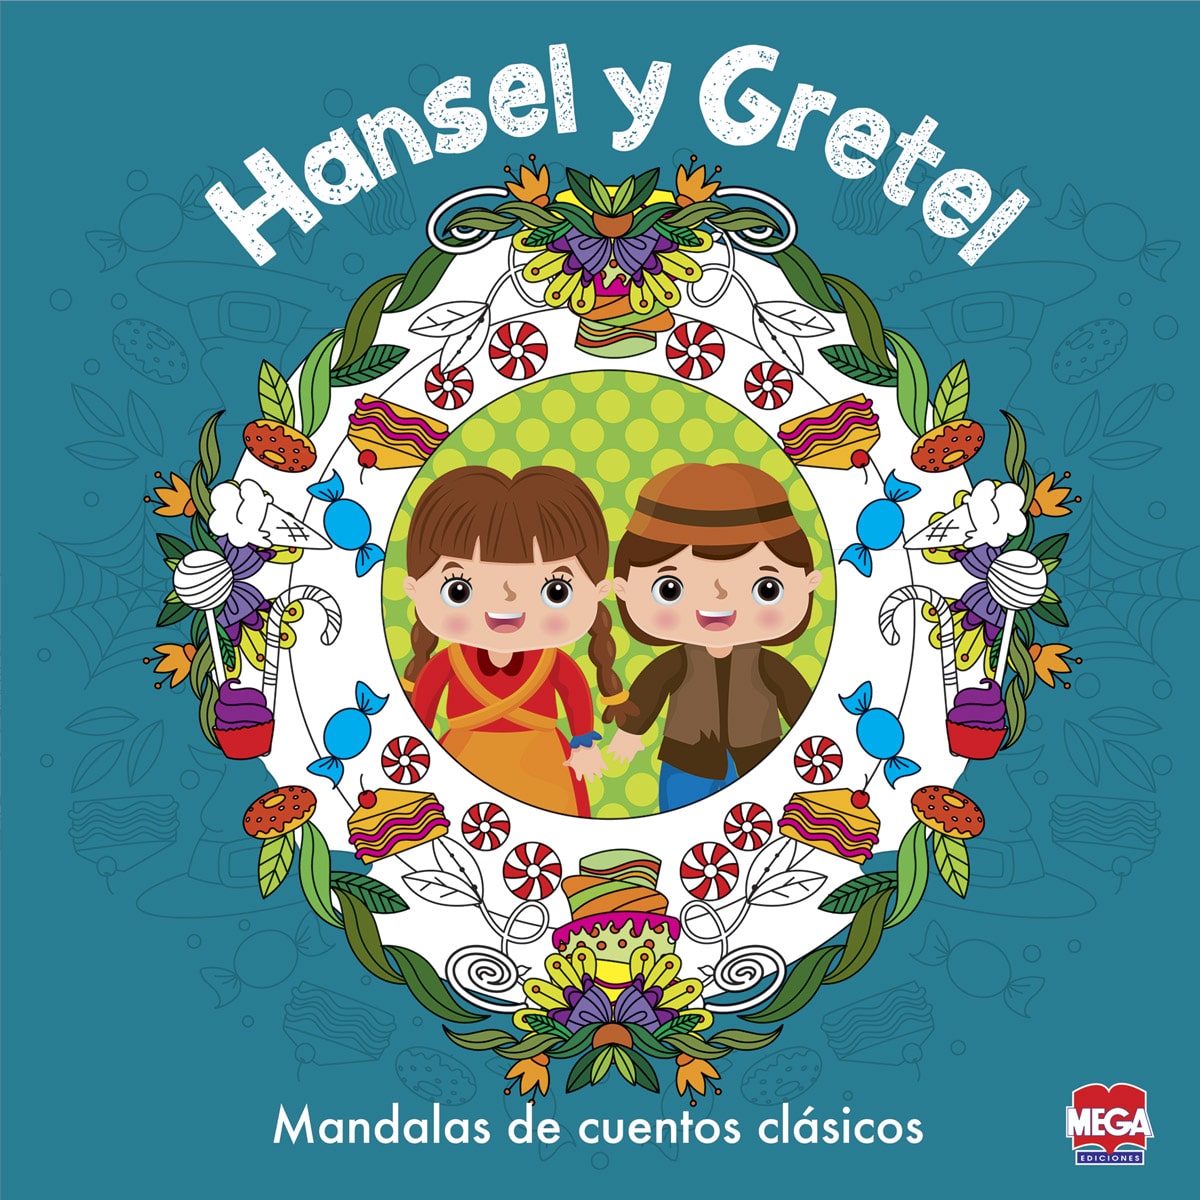 Hansel y Gretel mandalas de cuentos clásicos